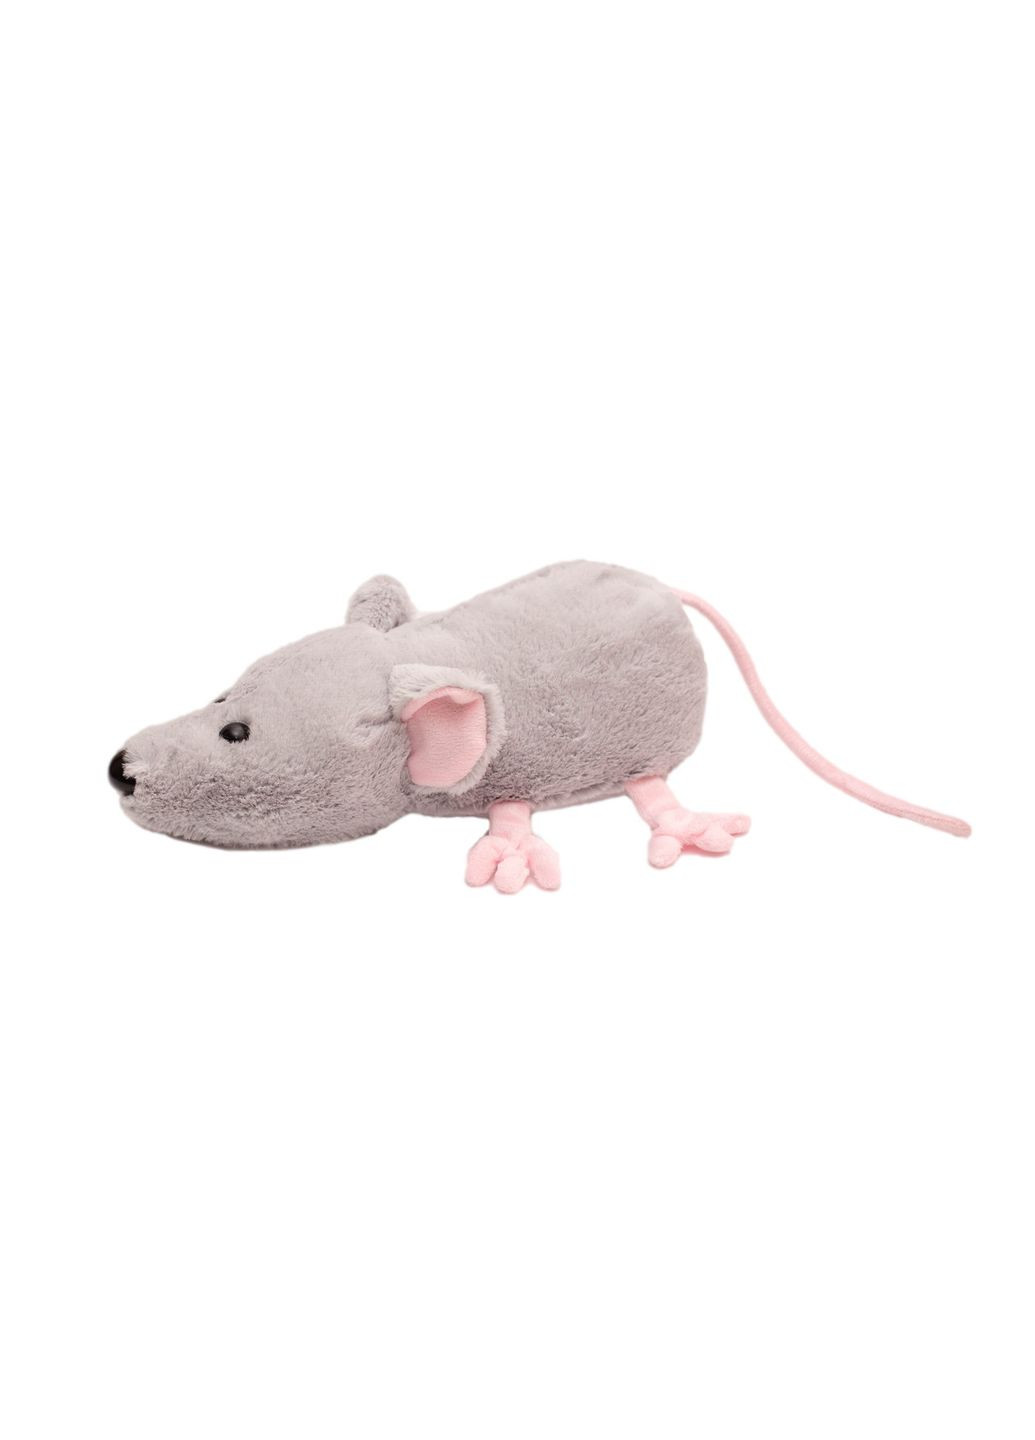 Мягкая игрушка Крыса серая 28 см Алина (280915595)